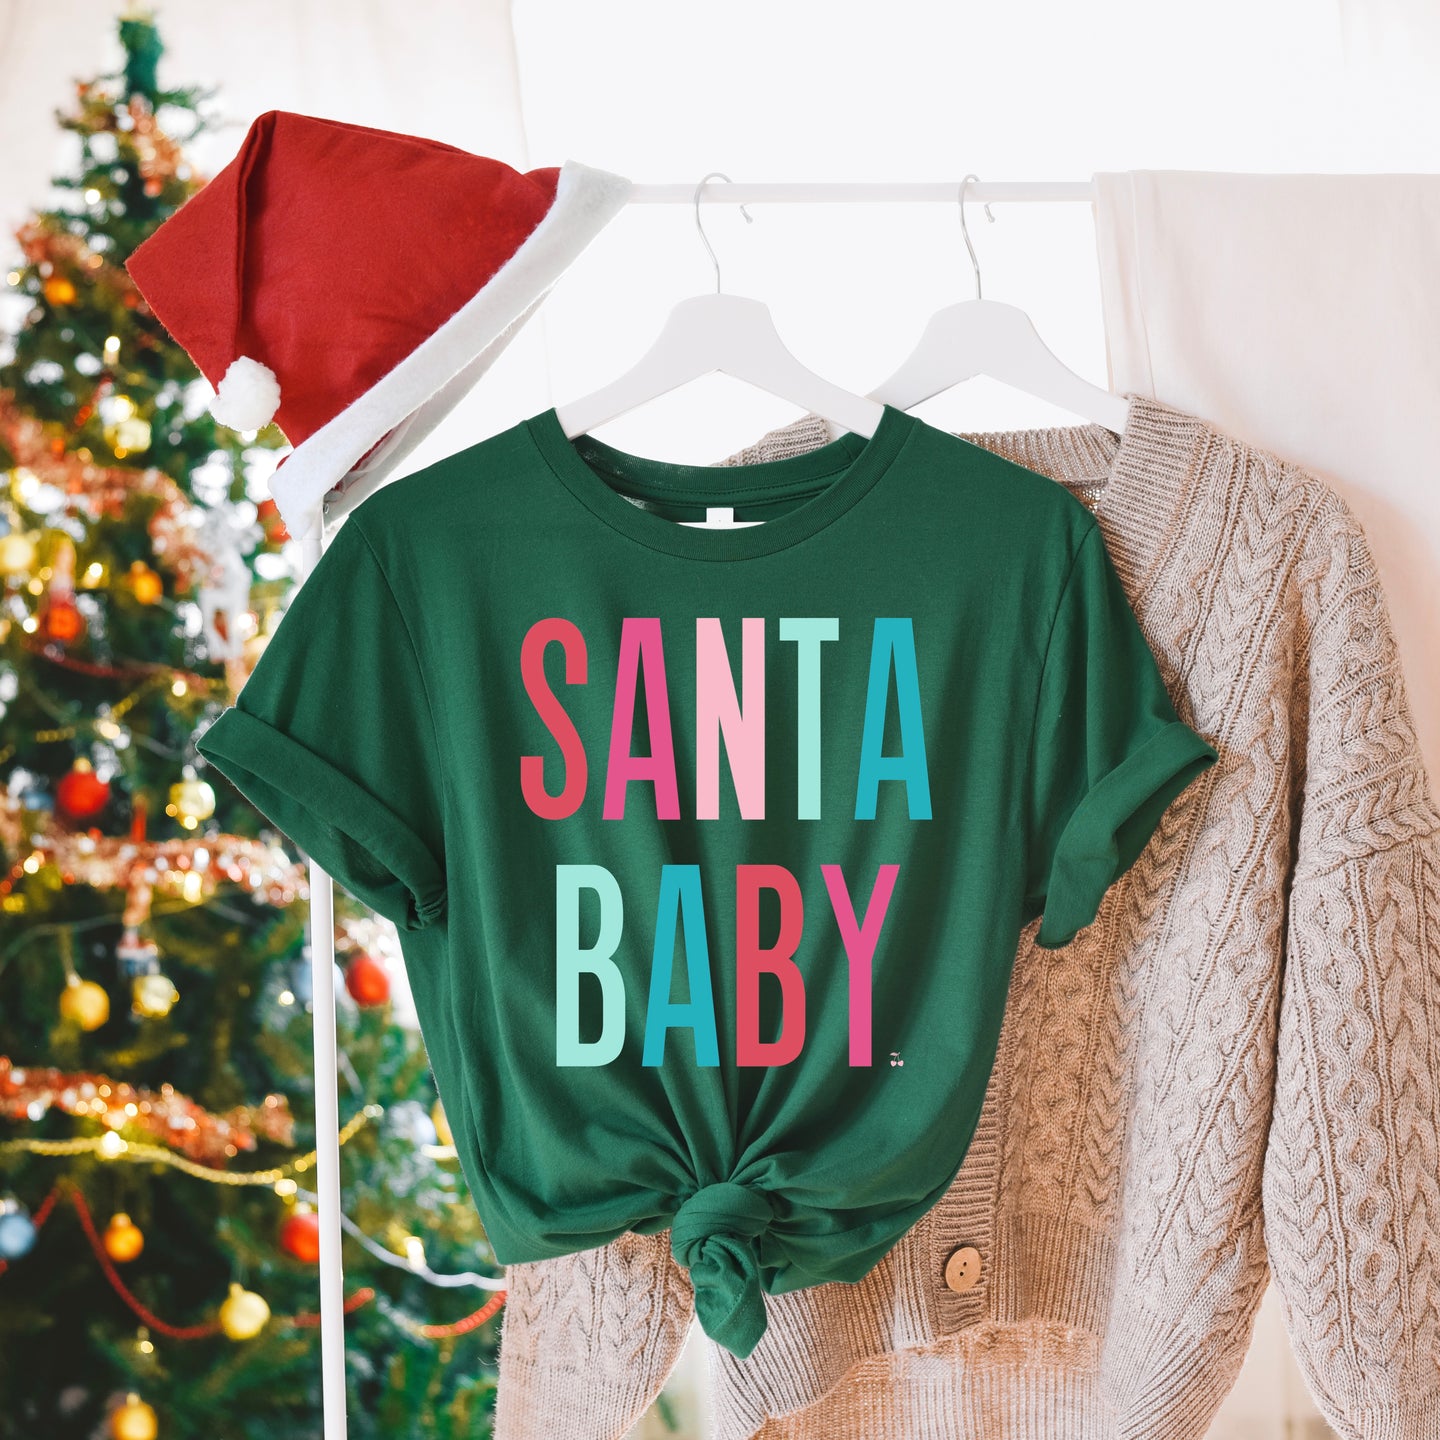 Santa Baby Graphic Shirt